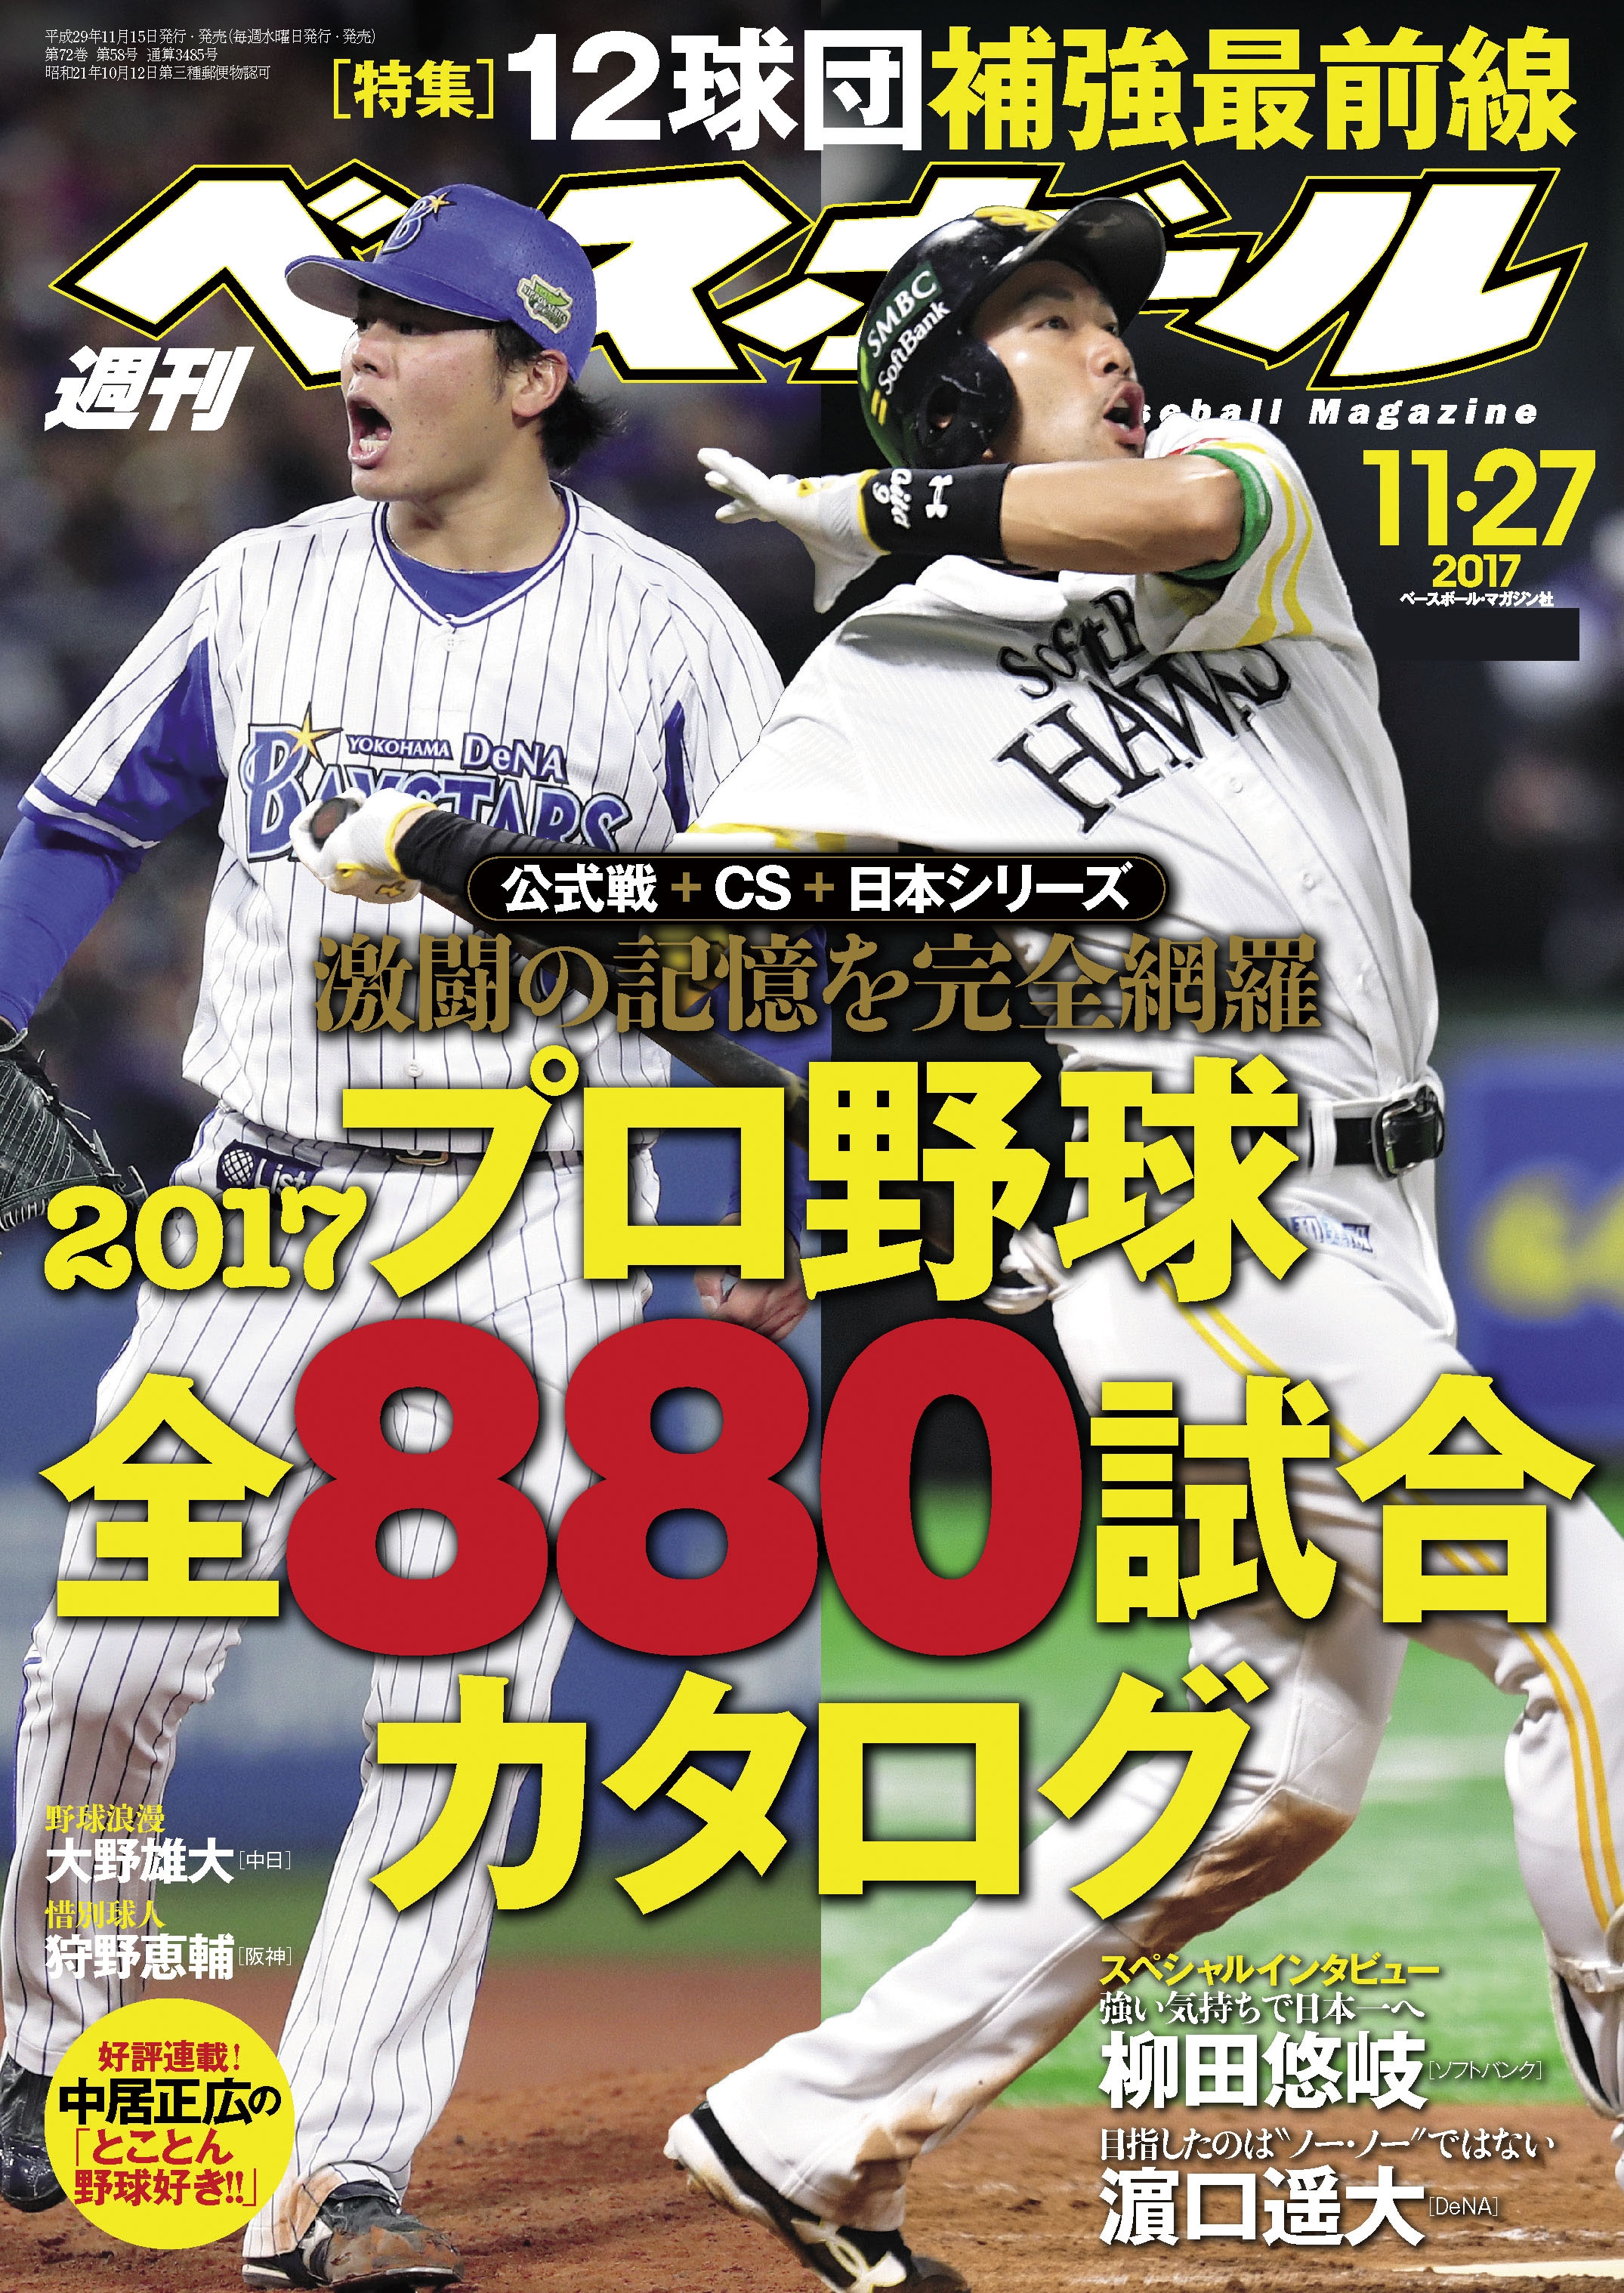 プロ野球「日本シリーズ」伝説 日本シリーズ&プレーオフ全429試合完全 